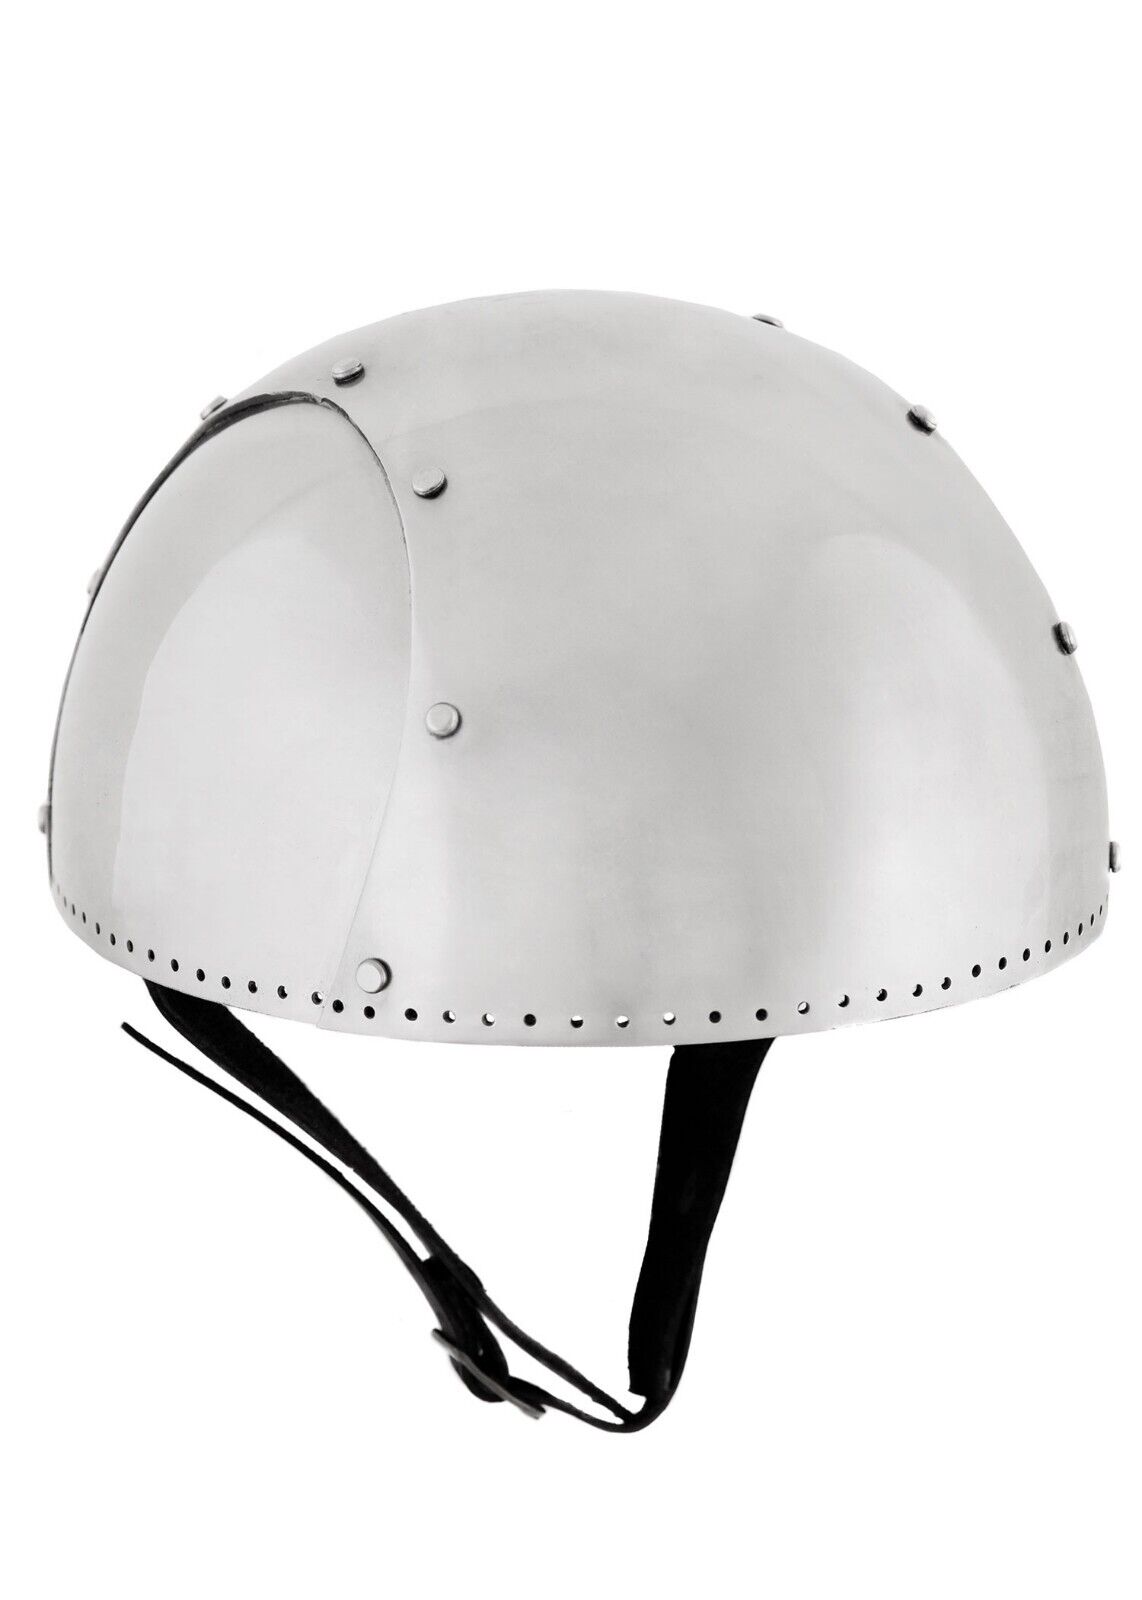 Archer helm,Secret helmet II, 2 mm steel,Reenactment helmet,light weight combat